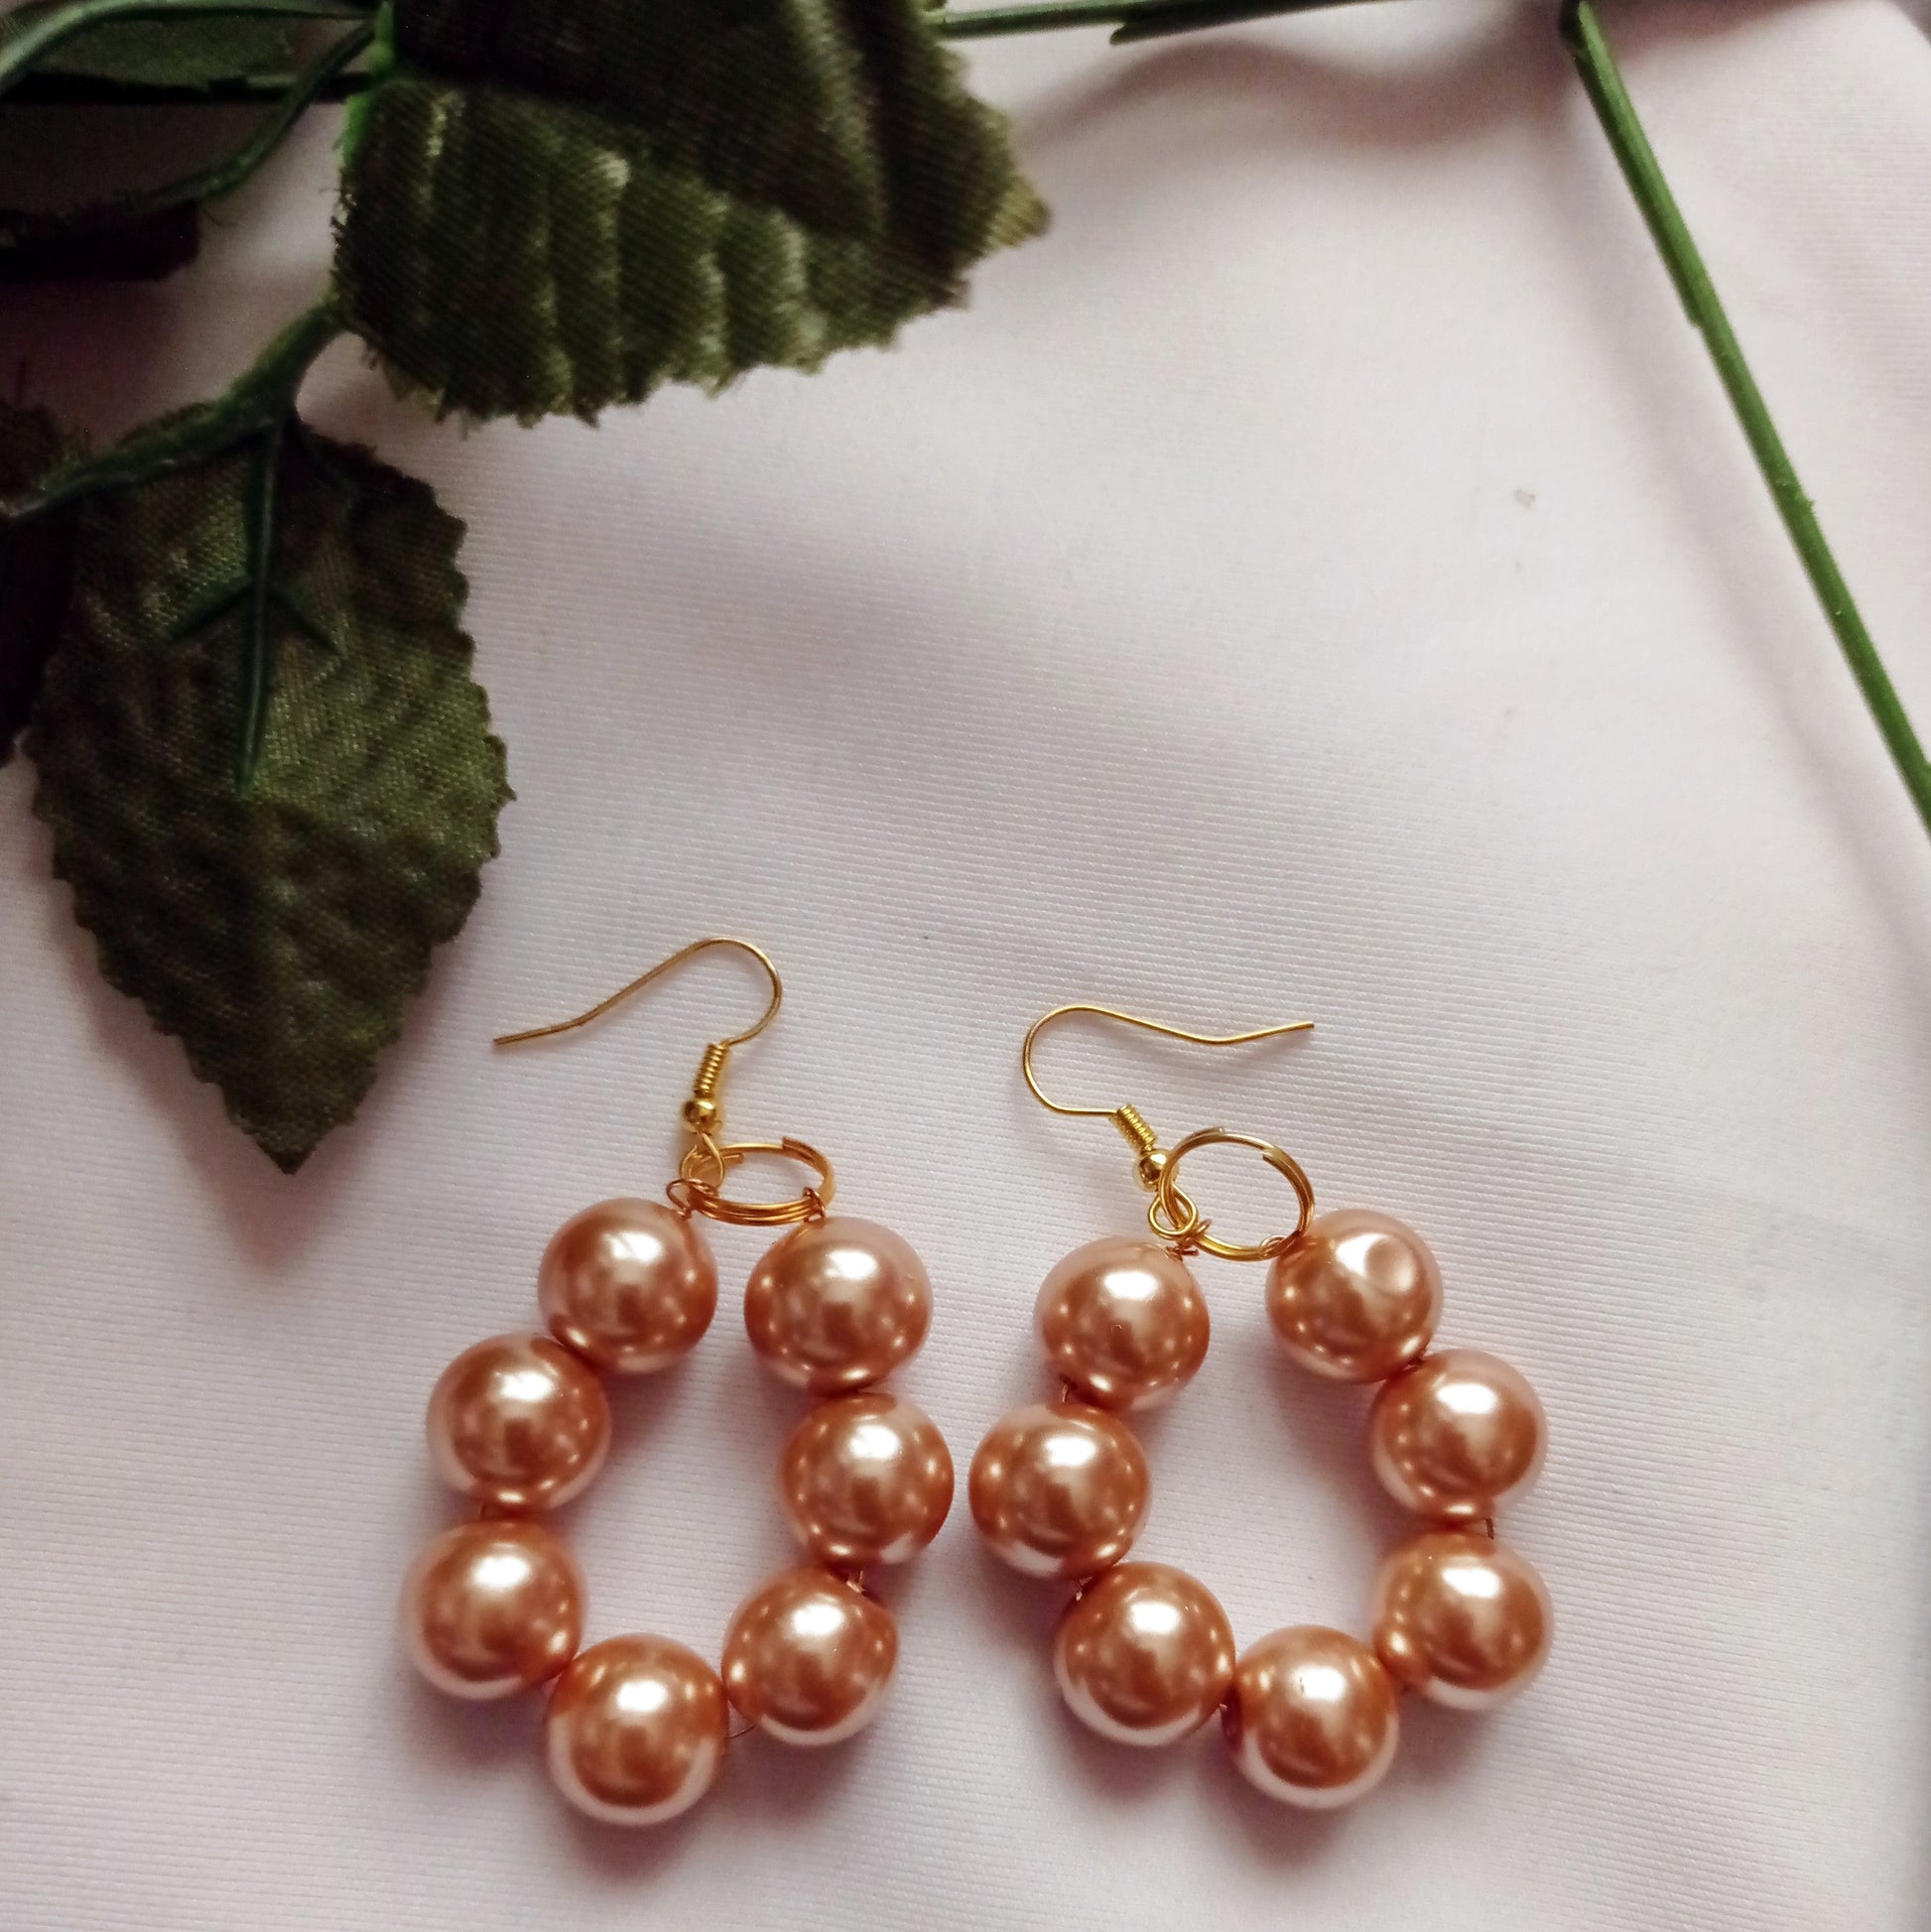 Bronze Glass Pearl Earrings, Glass Pearl Jewelry, Unique Earrings | by lovedbynlanla-4